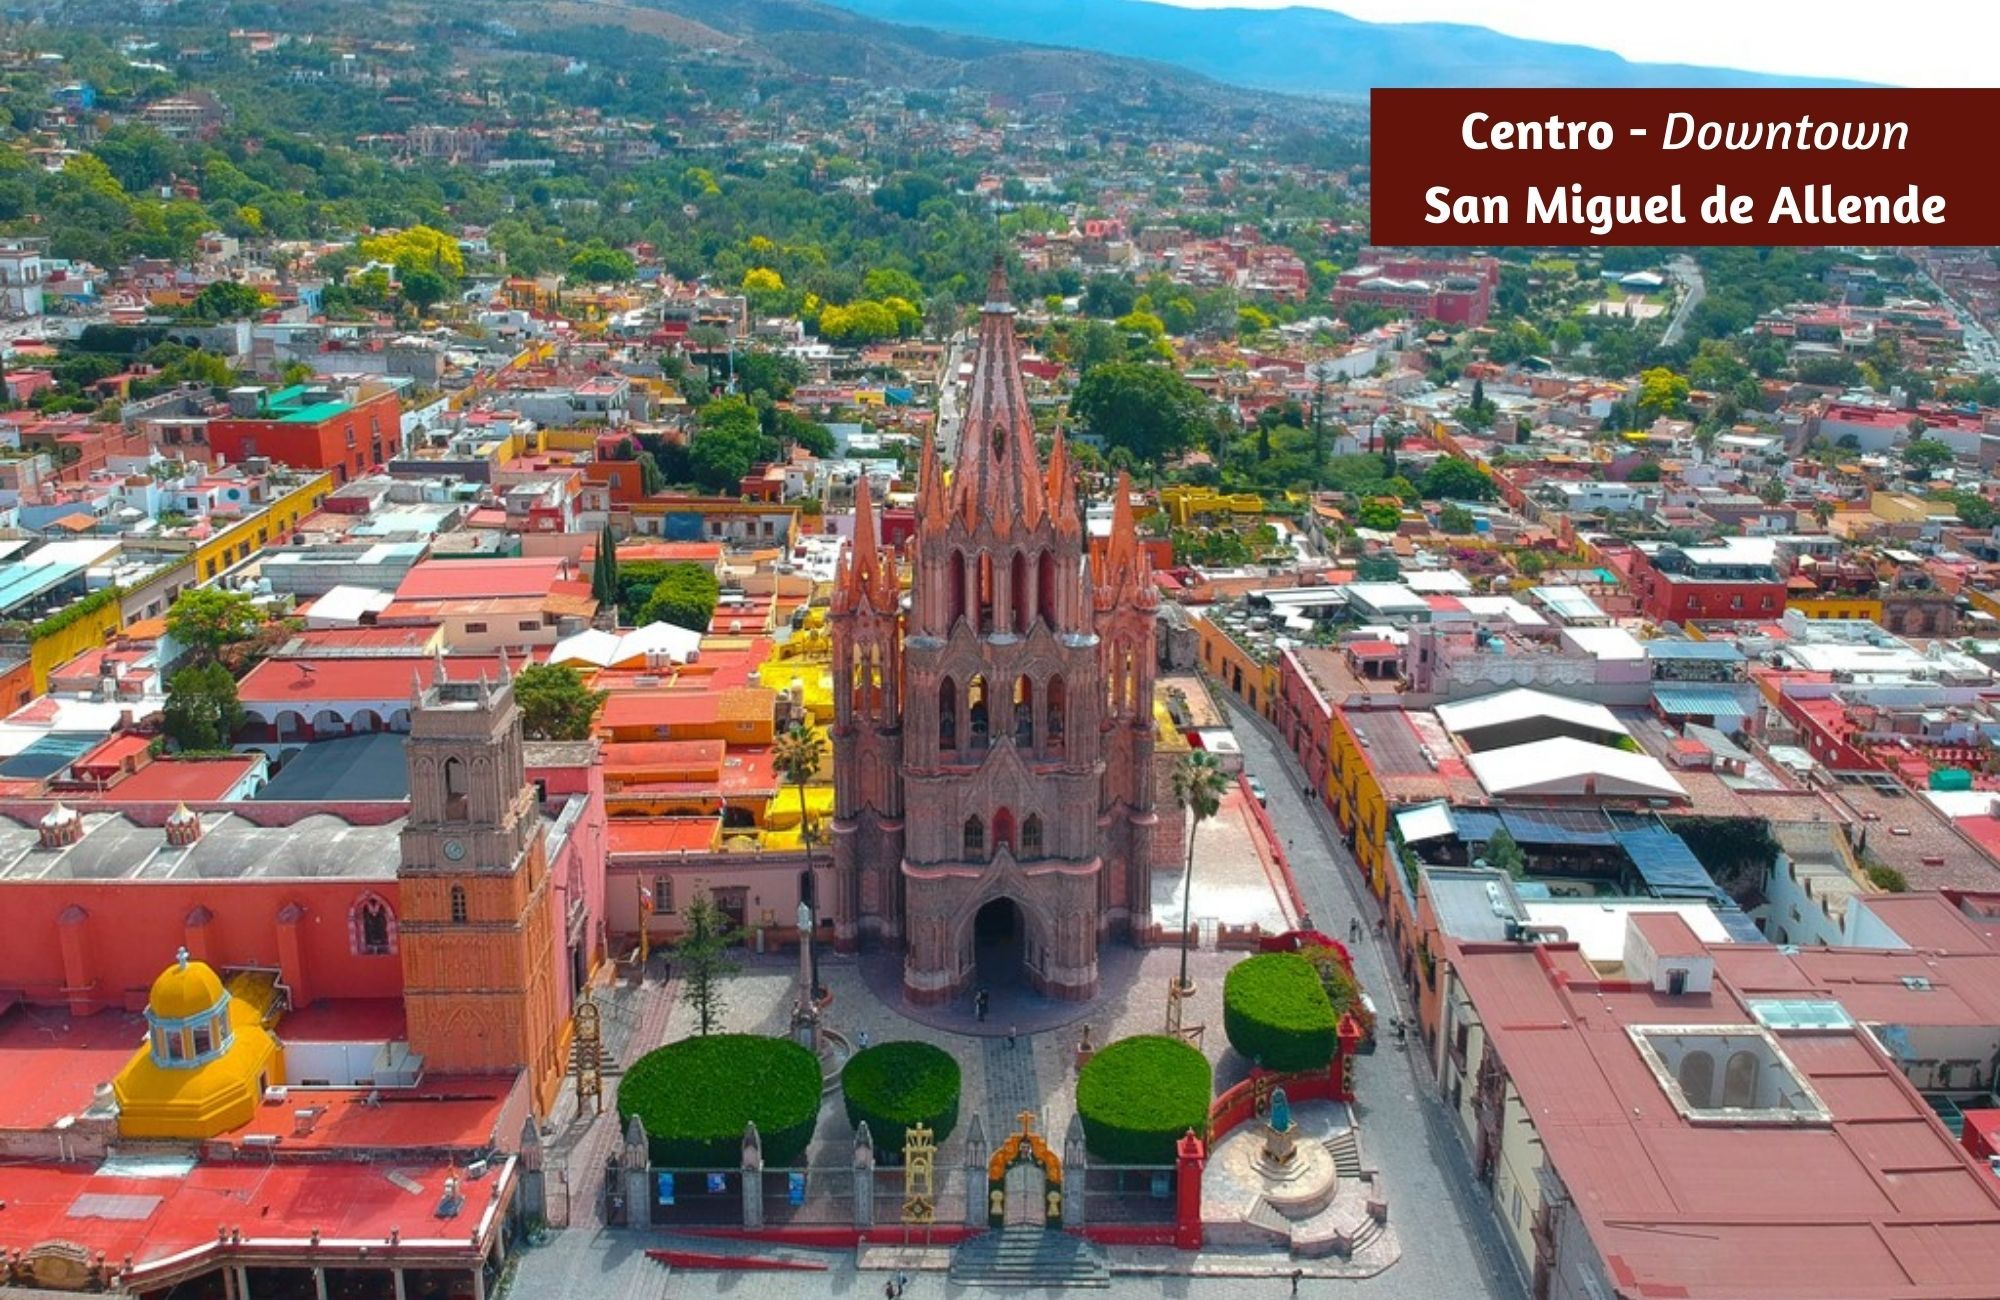 Lote de 503 m2 en Residencial de lujo con amenidades, en venta San Miguel de Allende.